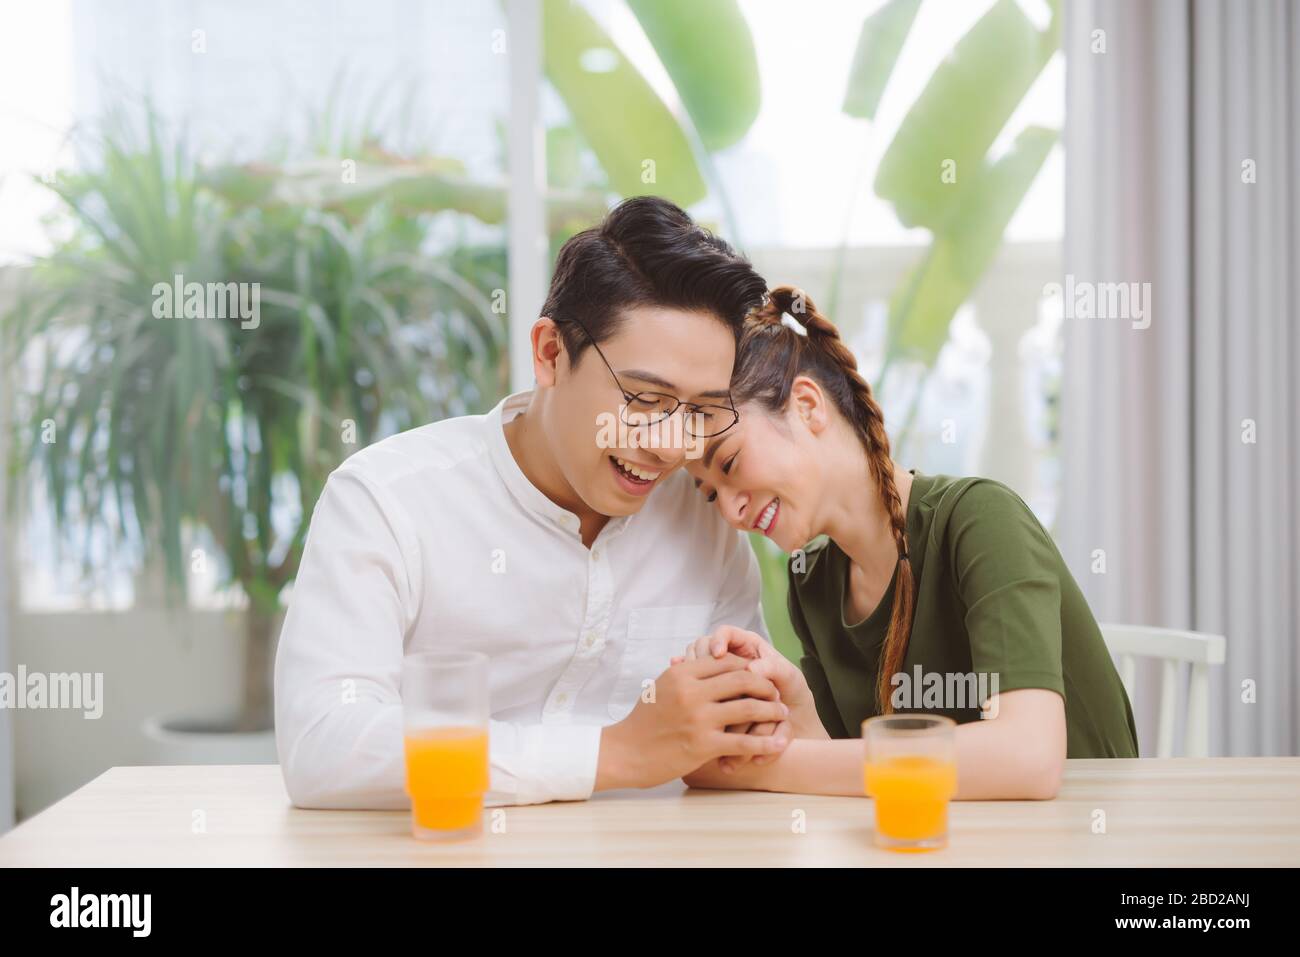 Ein Paar trinkt gern Kaffee und lacht im Café Stockfoto